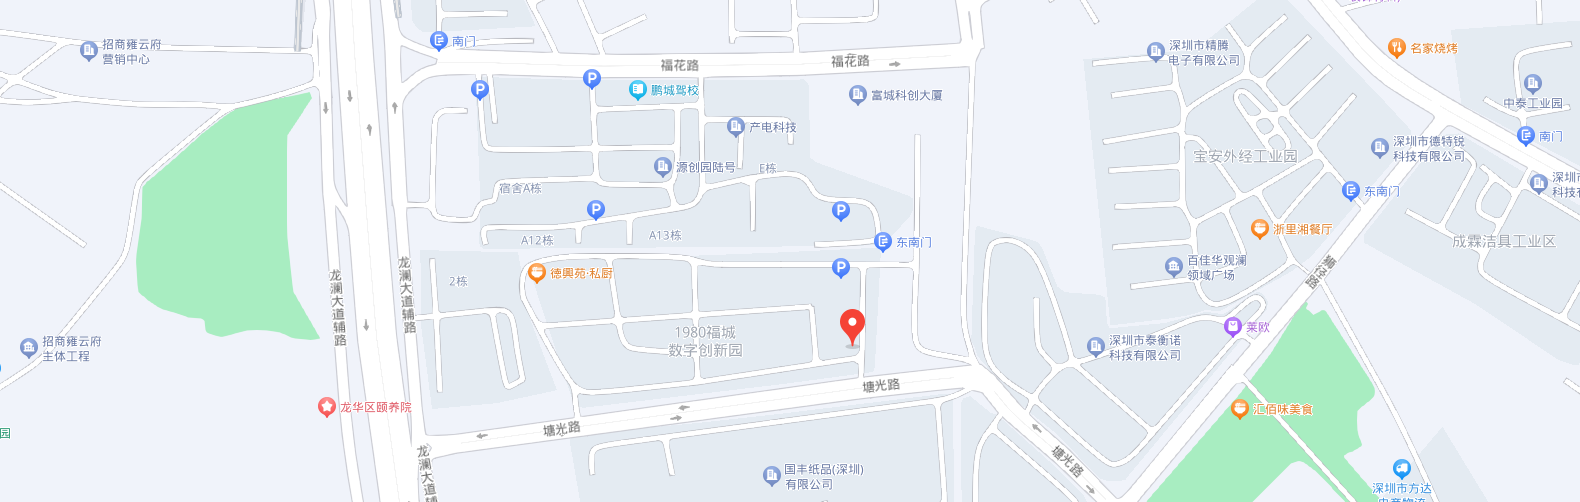 深圳市紐福斯科技有限公司地圖